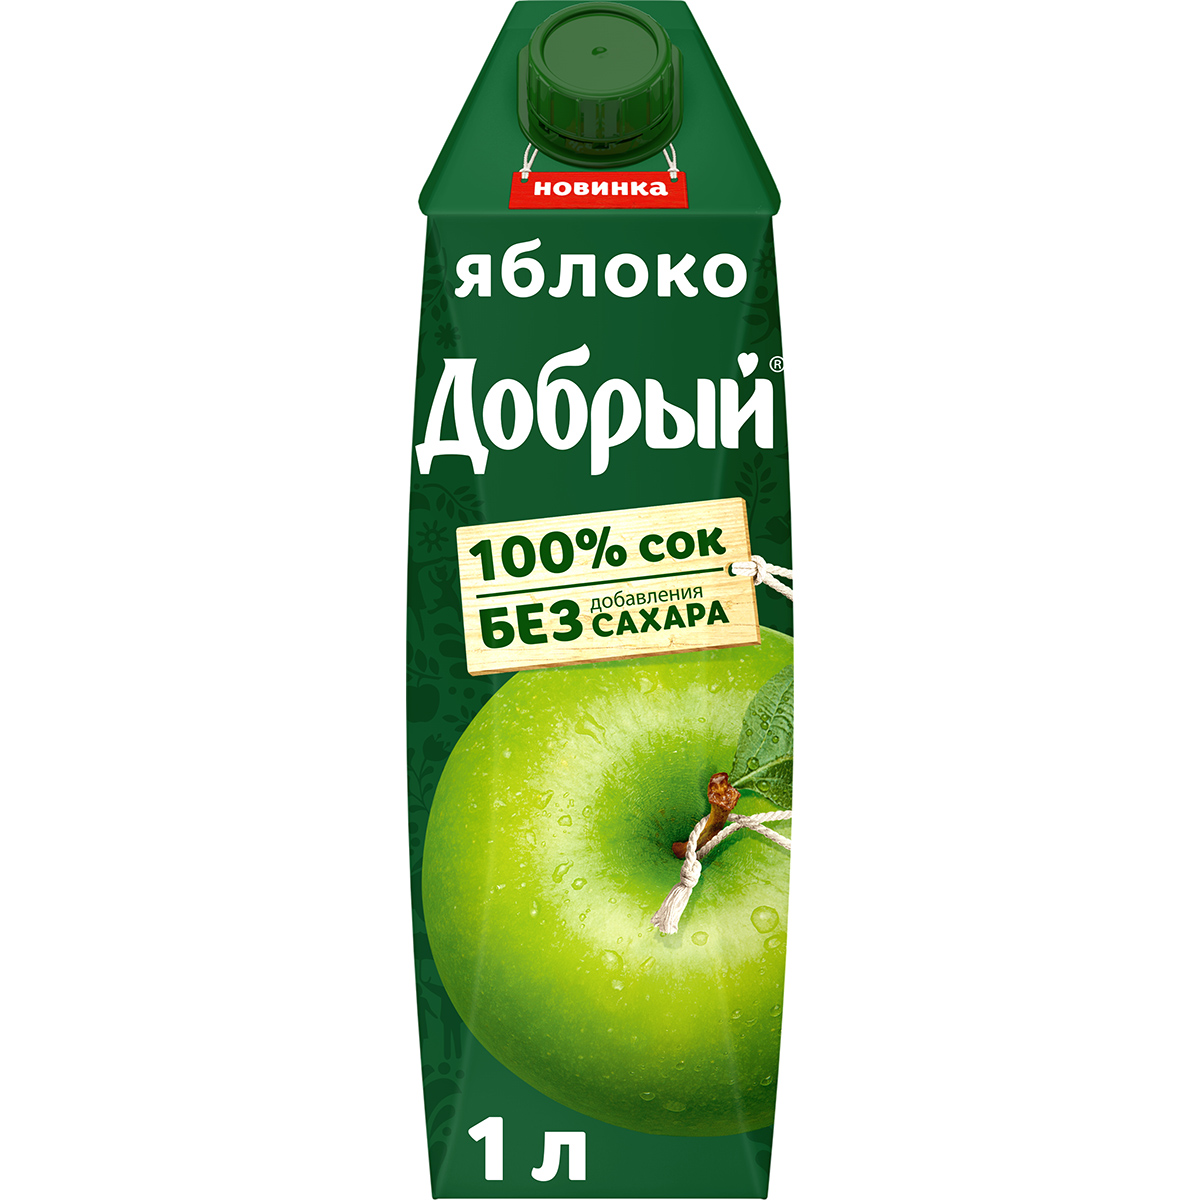 Сок Добрый яблочный осветленный 100% 1 л сок добрый яблочный 100% 330 мл